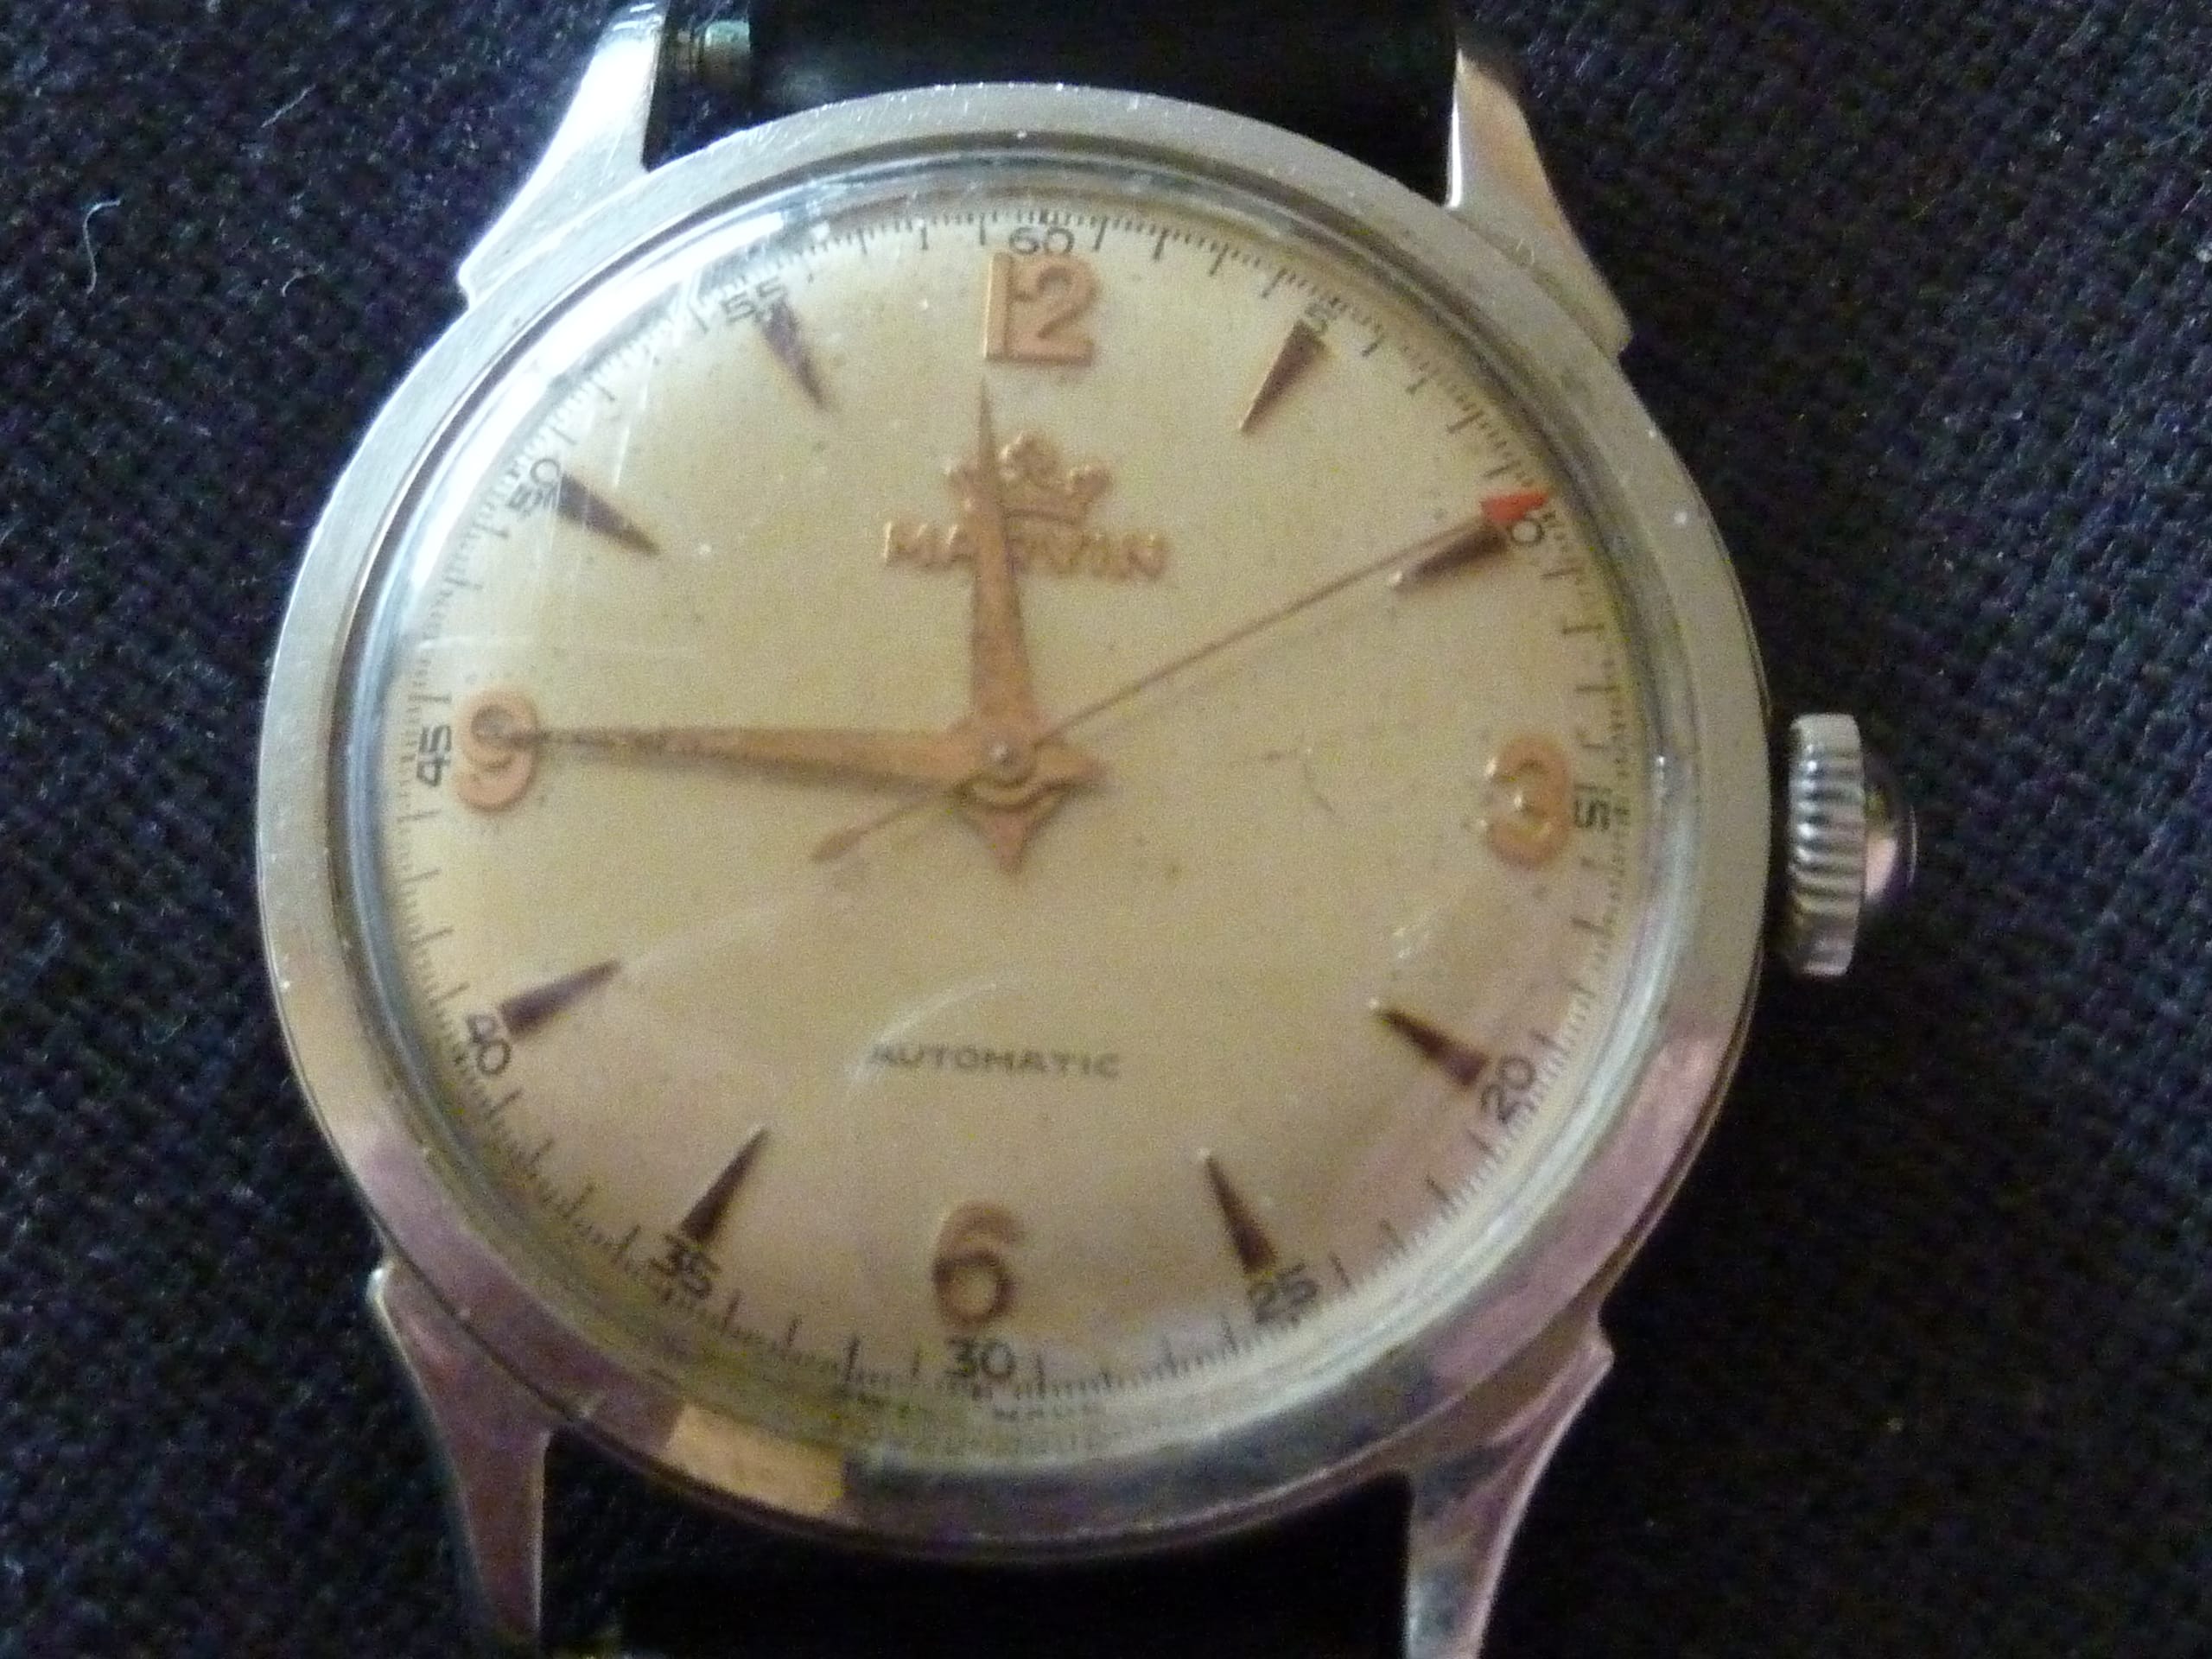 Estimation Montre, horloge: Montre Marvin automatique années 1960